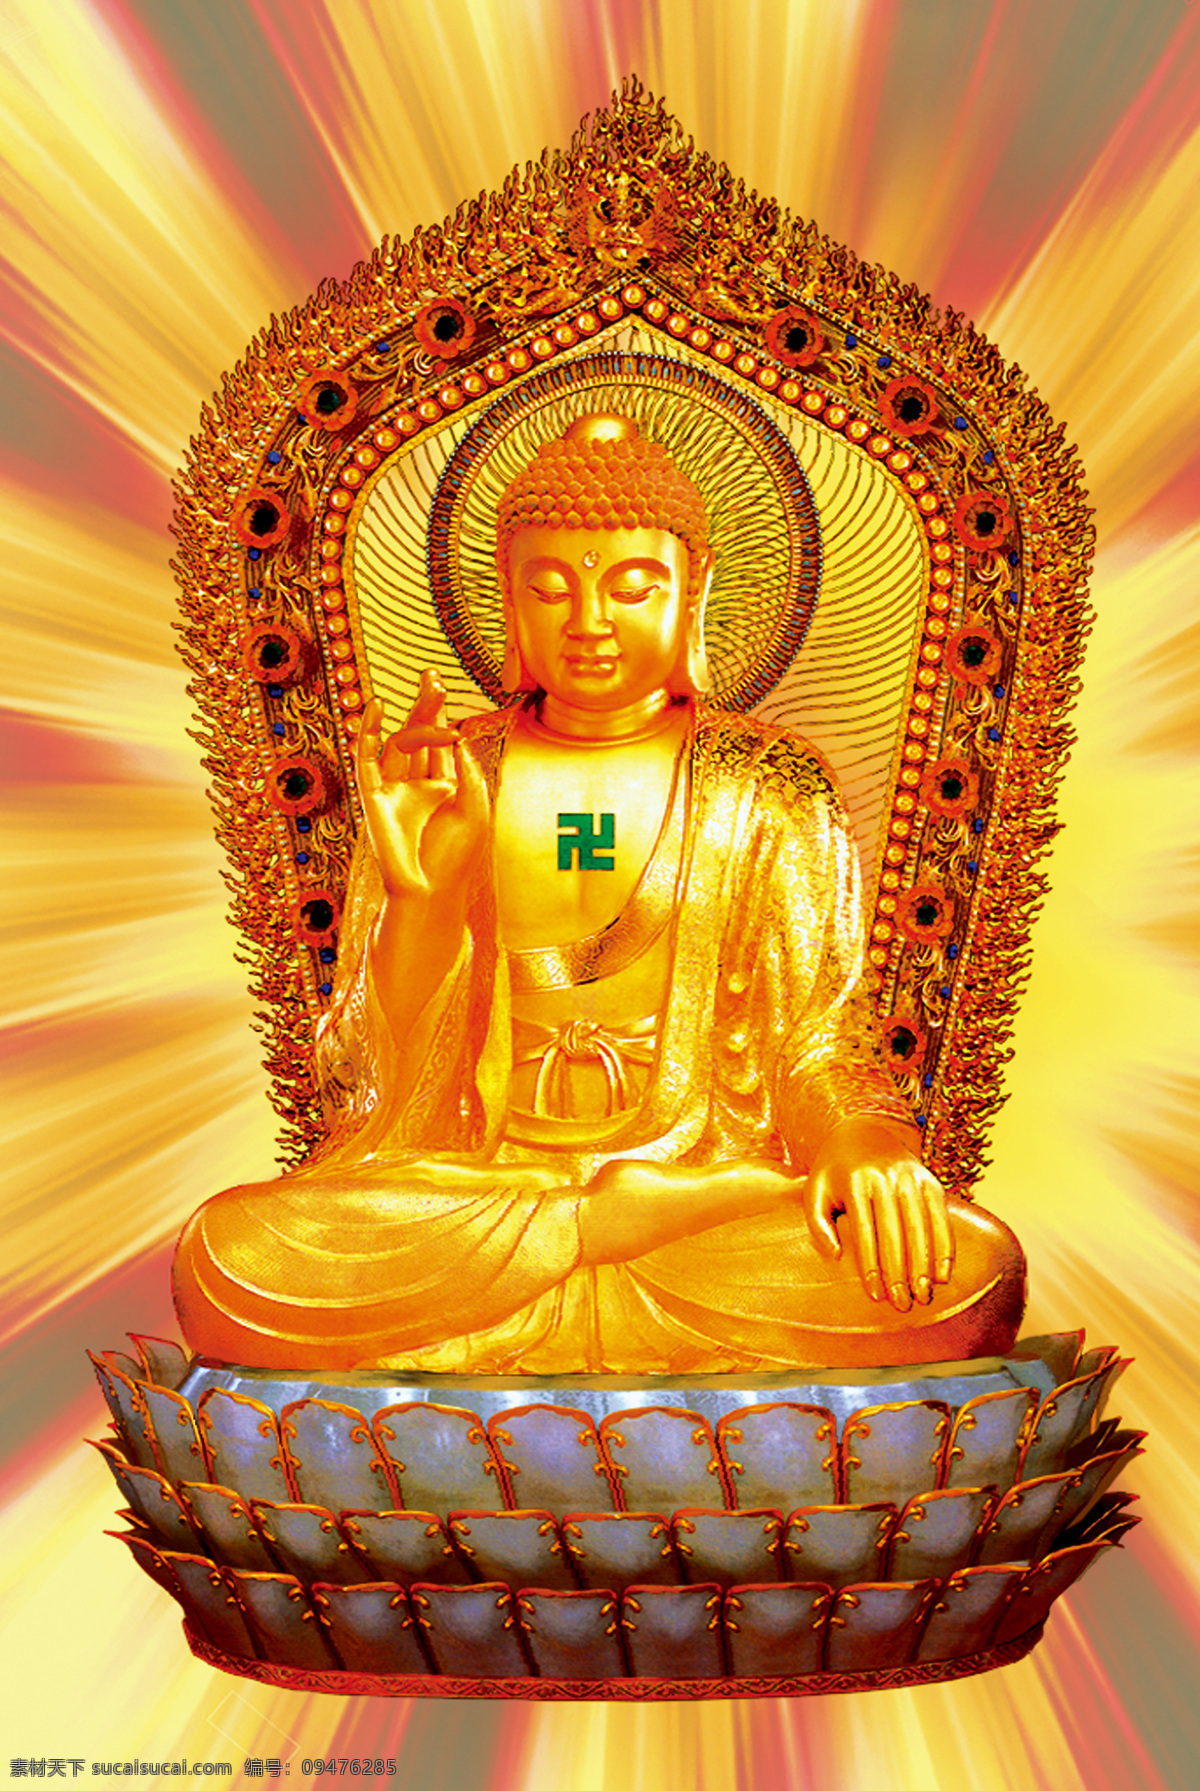 释迦摩尼 佛像 佛教用品 佛教 高清图 文化艺术 宗教信仰